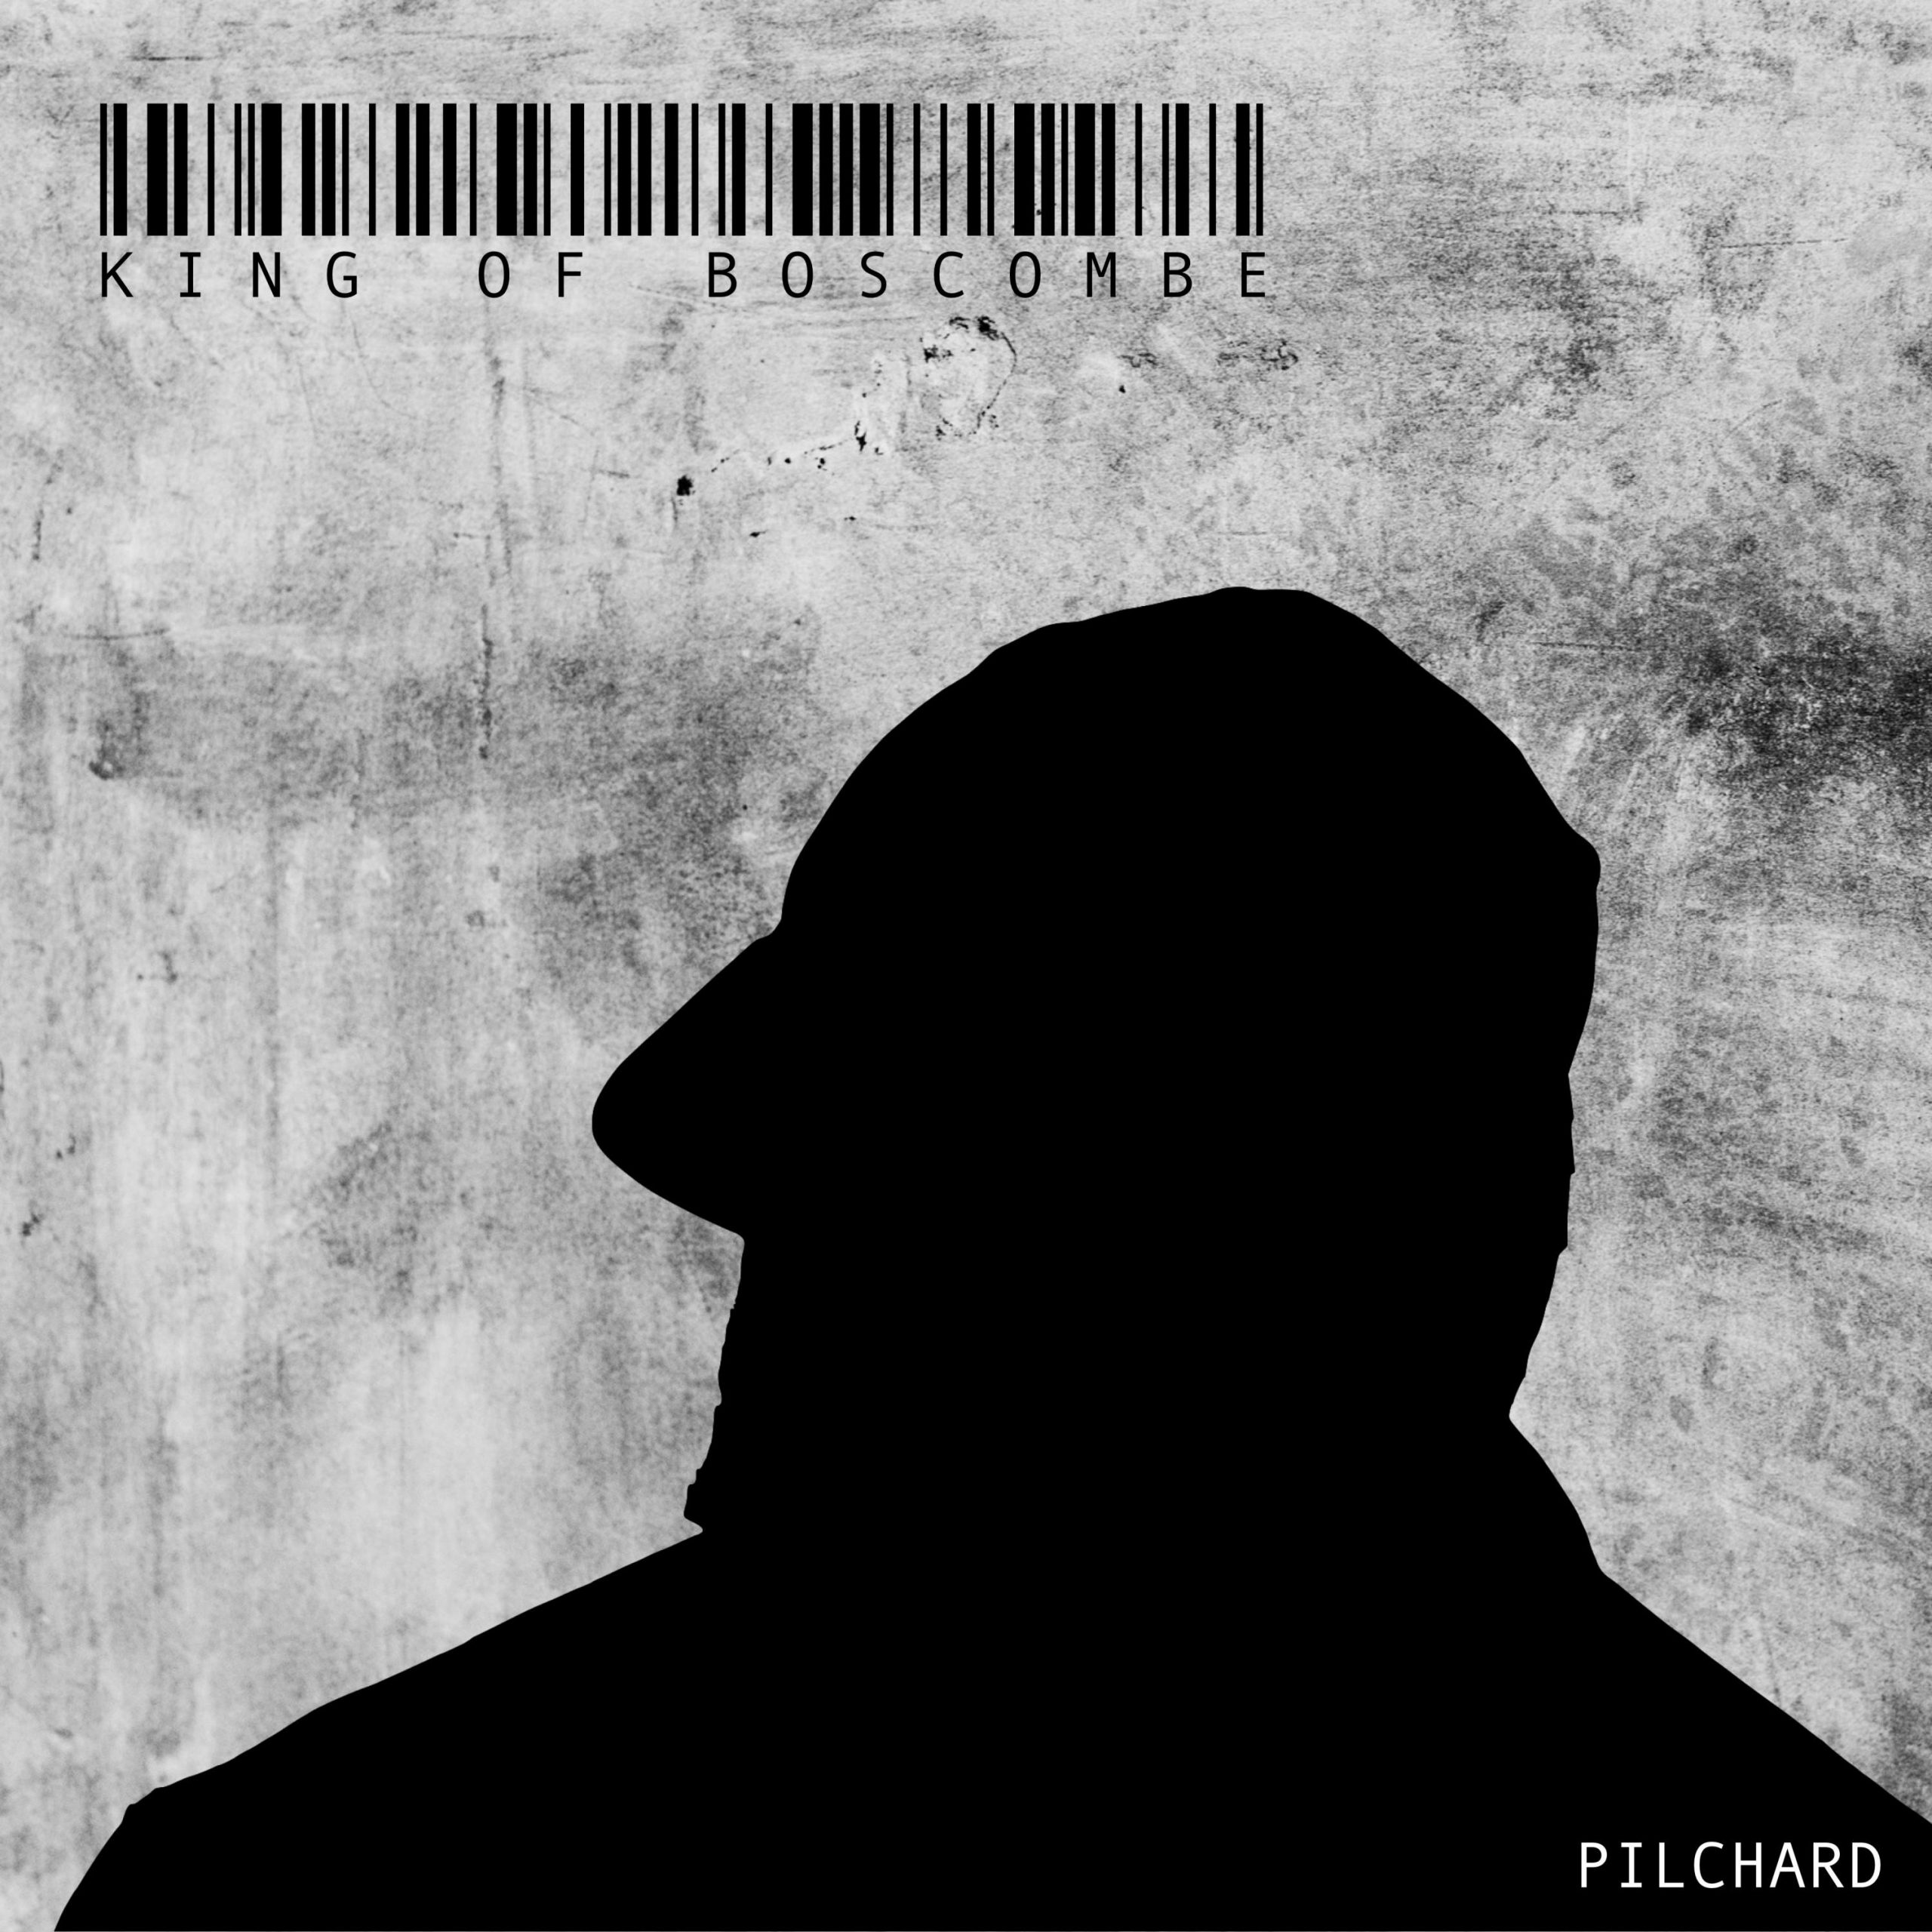 Pilchard - King of Boscombe album art